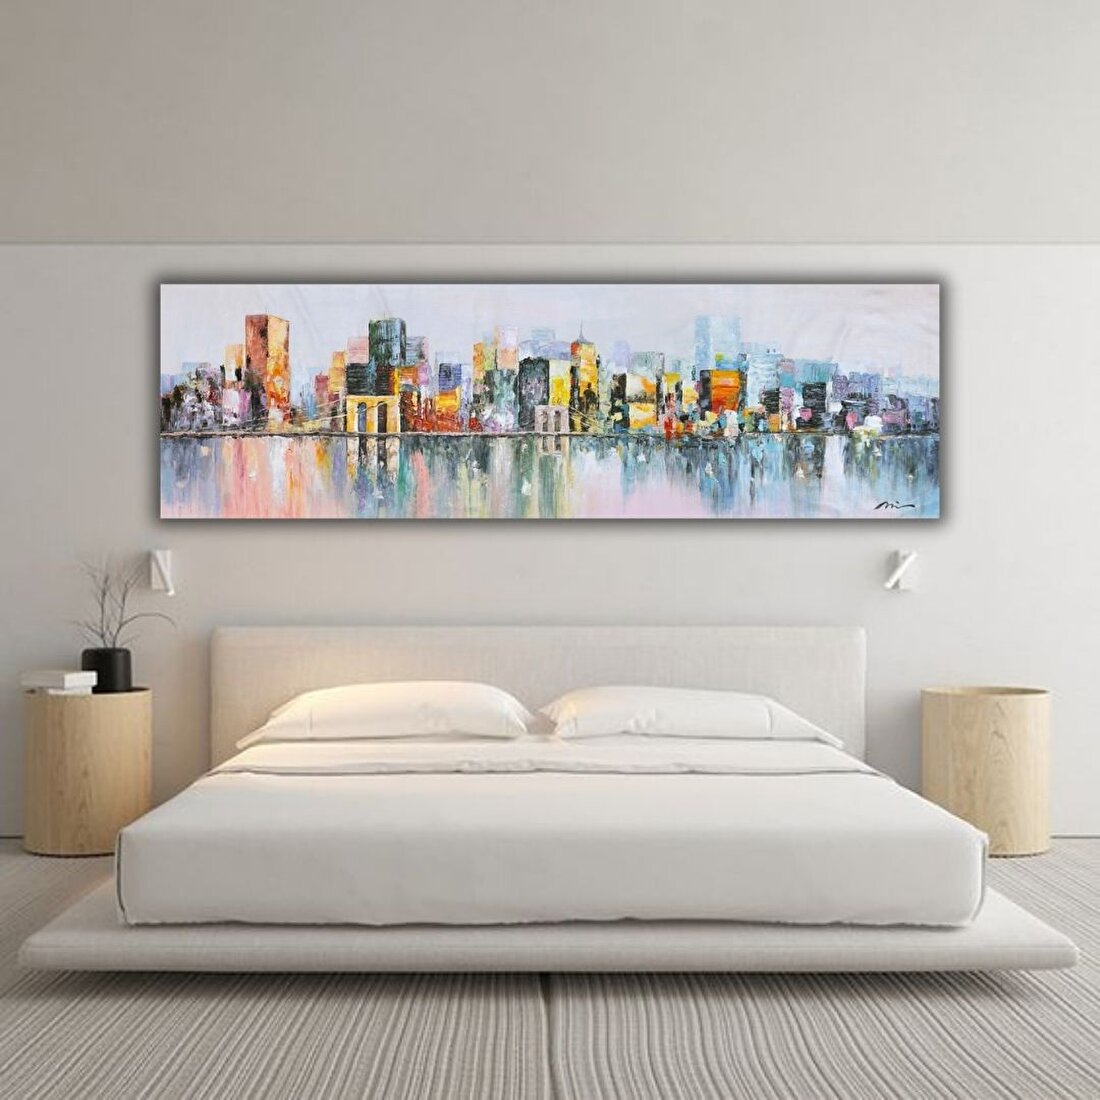 Yatak Arkası Şehir El Yapımı Yağlı Boya Tablo 164x59cm